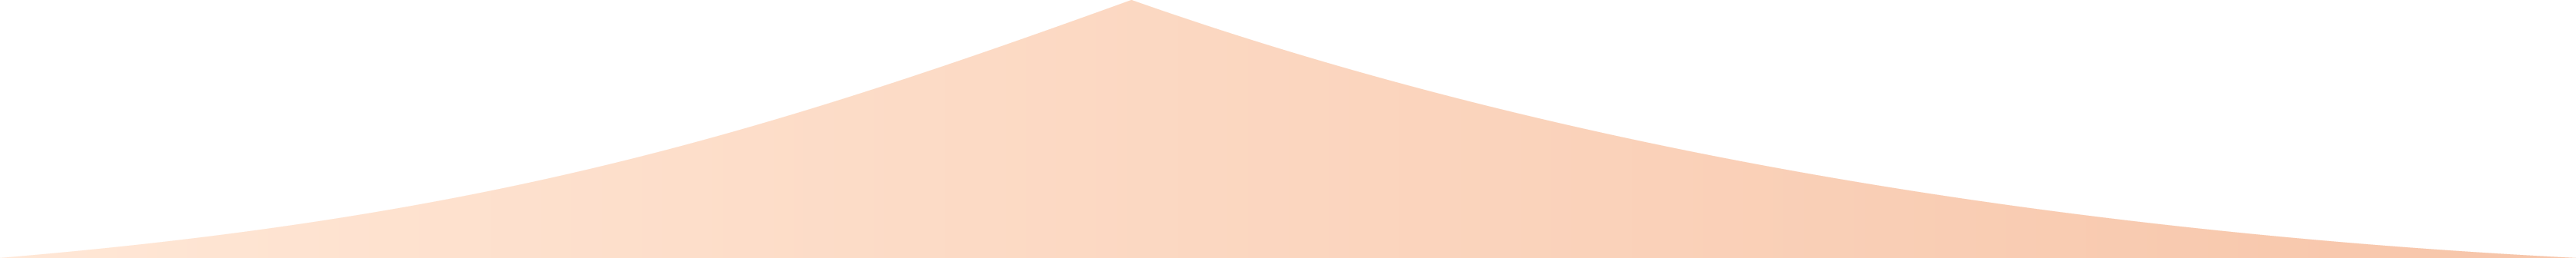 Section divider shape